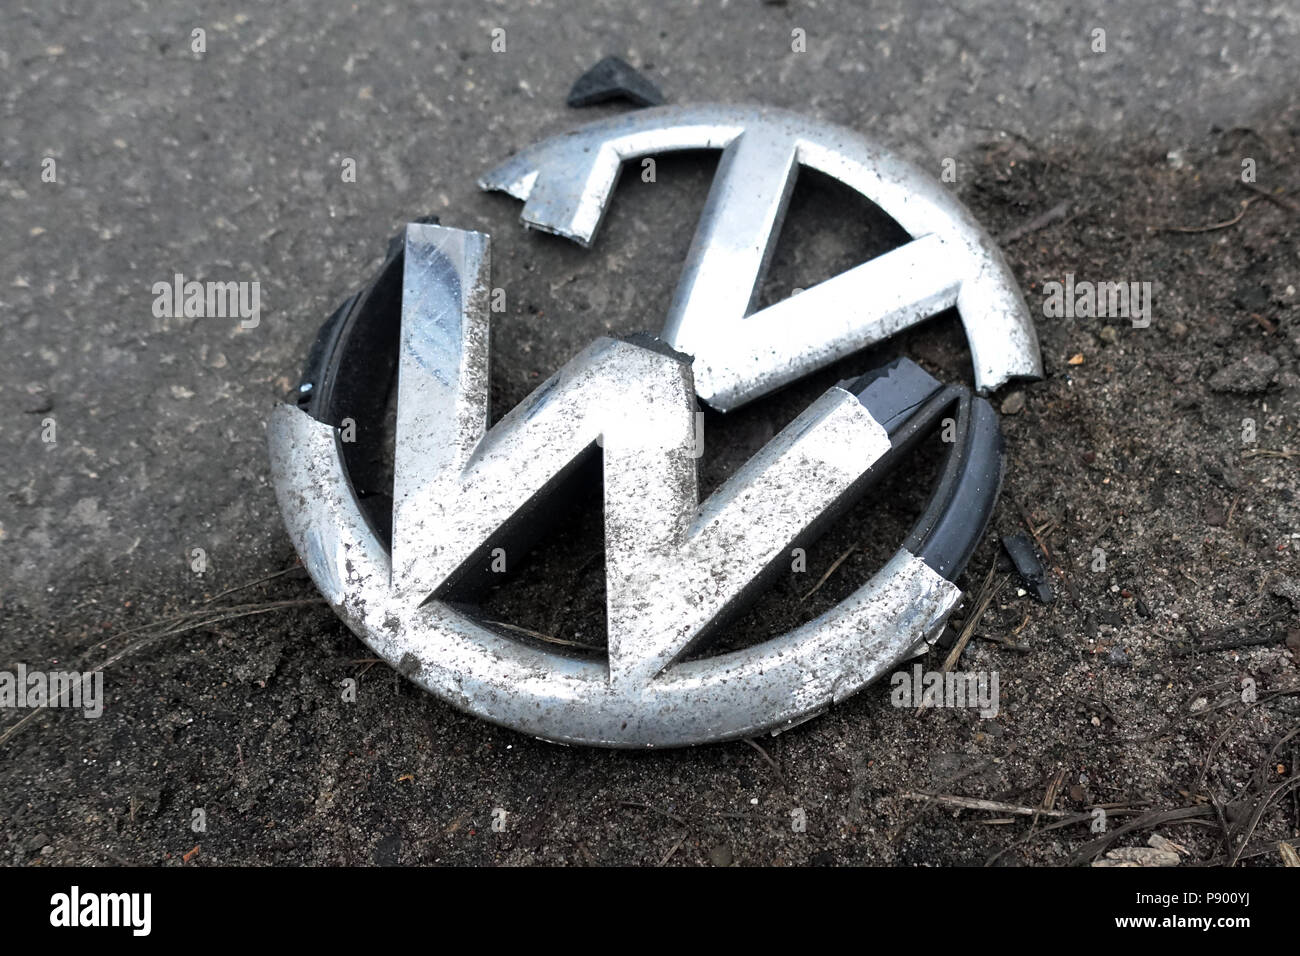 Berlin, Allemagne, emblème d'une grille de calandre Volkswagen est situé sur le bord de la route Banque D'Images